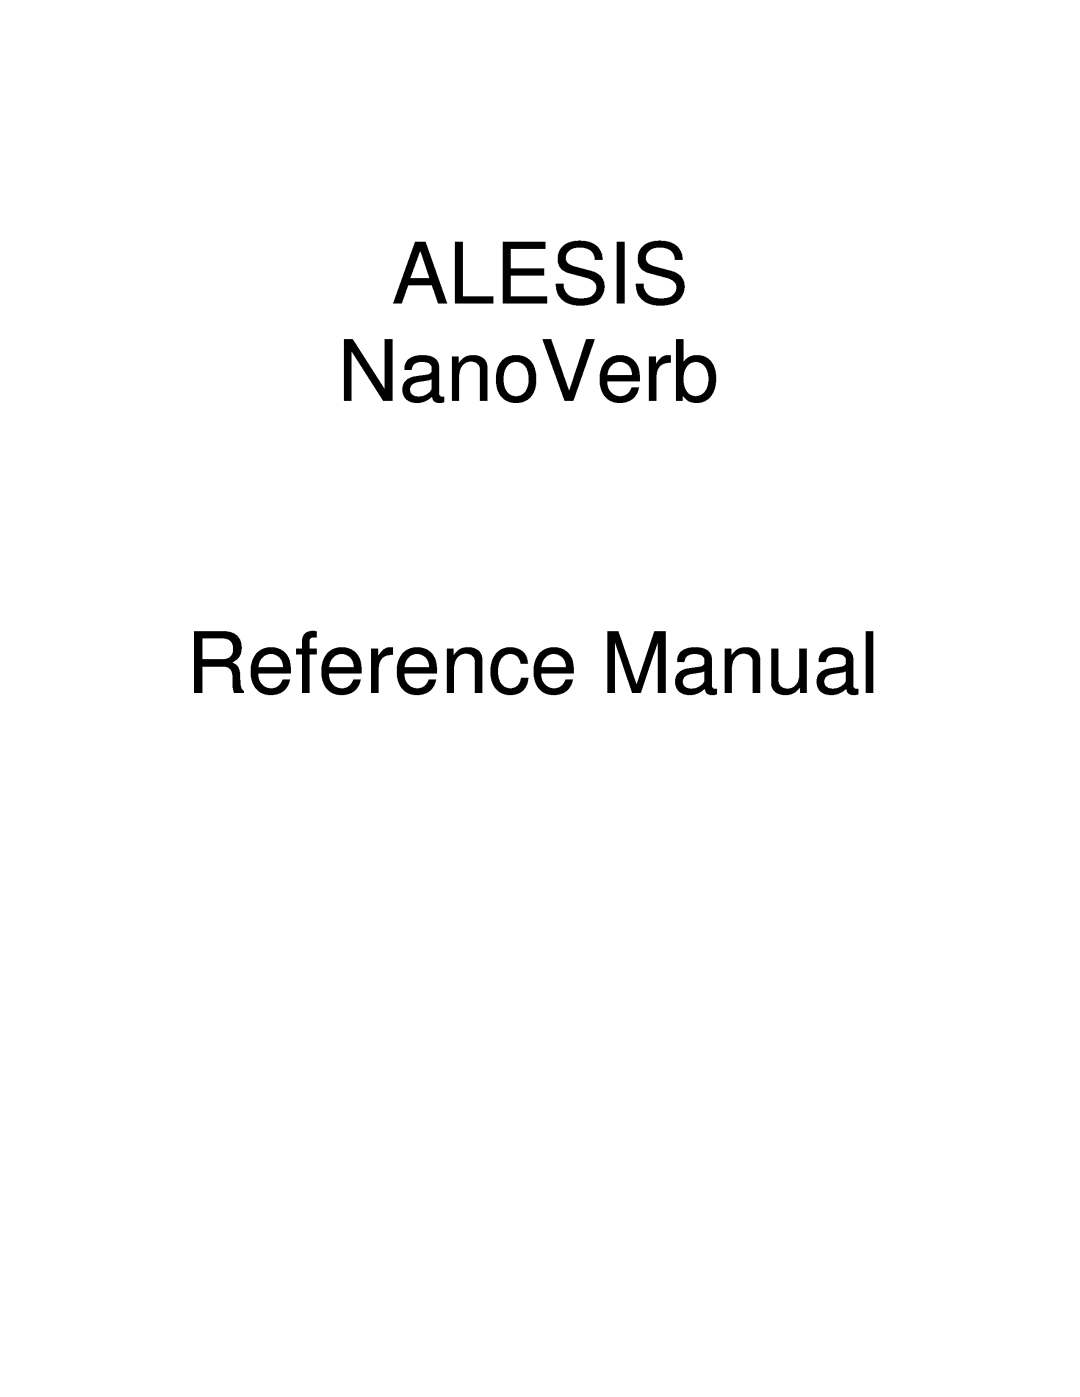 Alesis Stereo Amplifier manual ALESIS NanoVerb Reference Manual 